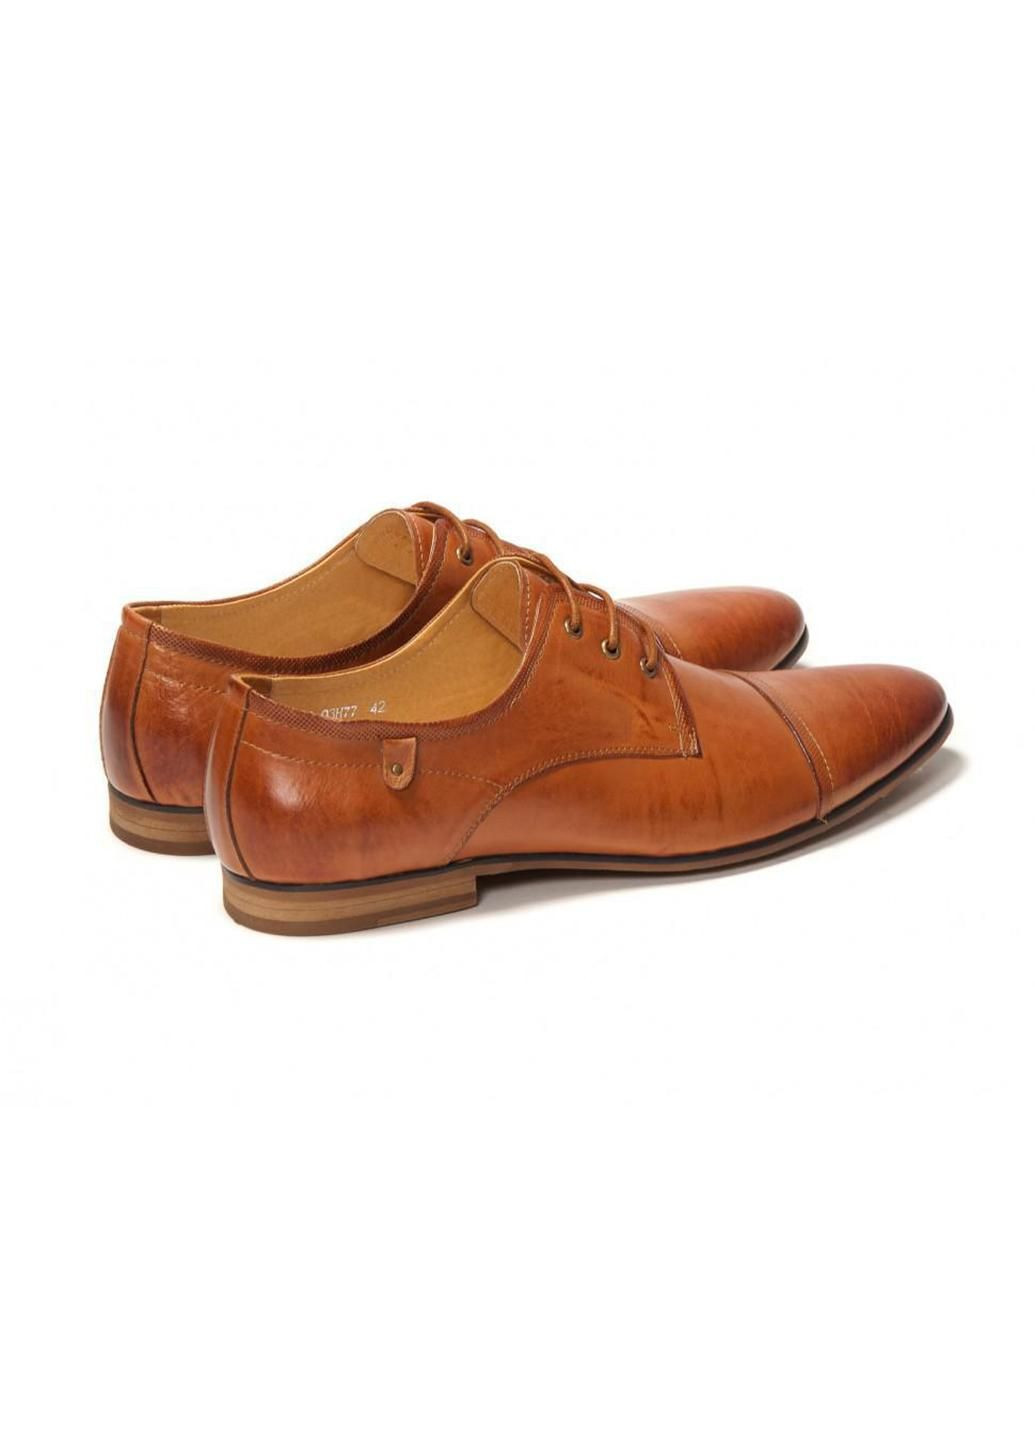 Коричневые туфли 7141021 41 цвет коричневый Carlo Delari